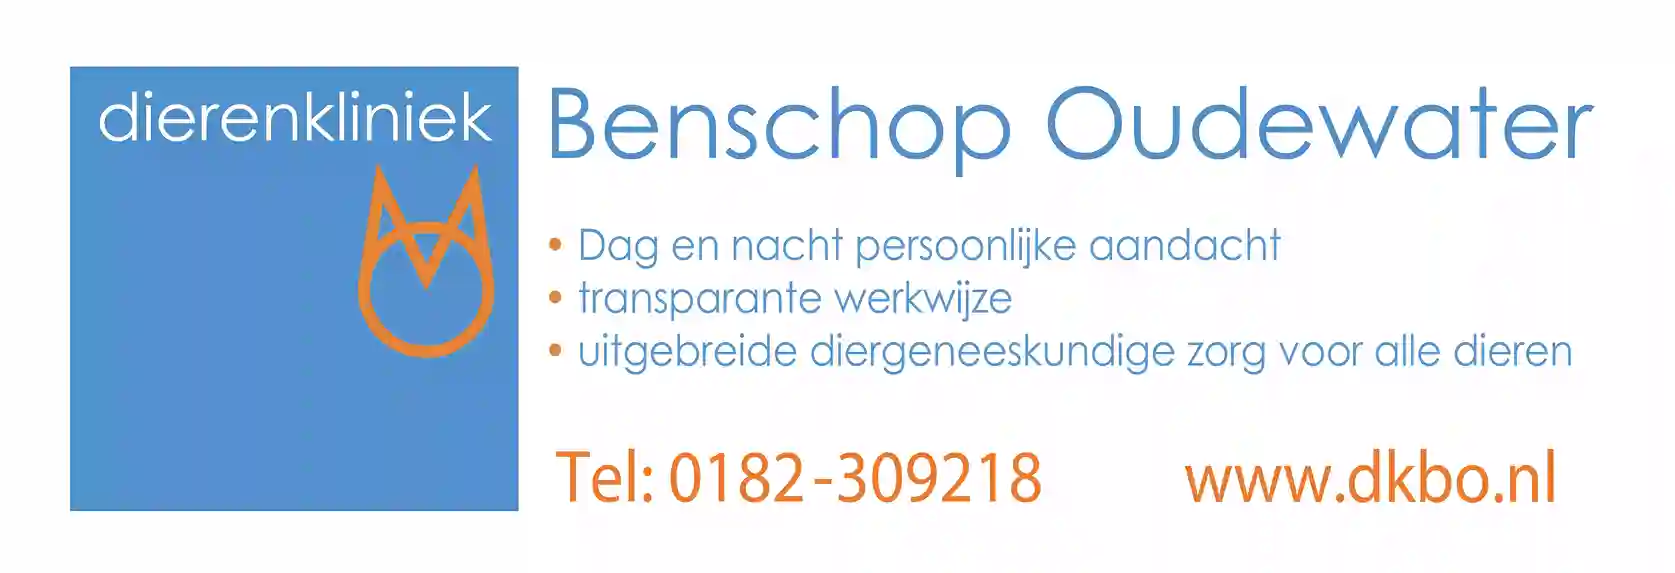 freecompress-Dierenkliniek-Benschop-Oudewater-150x50